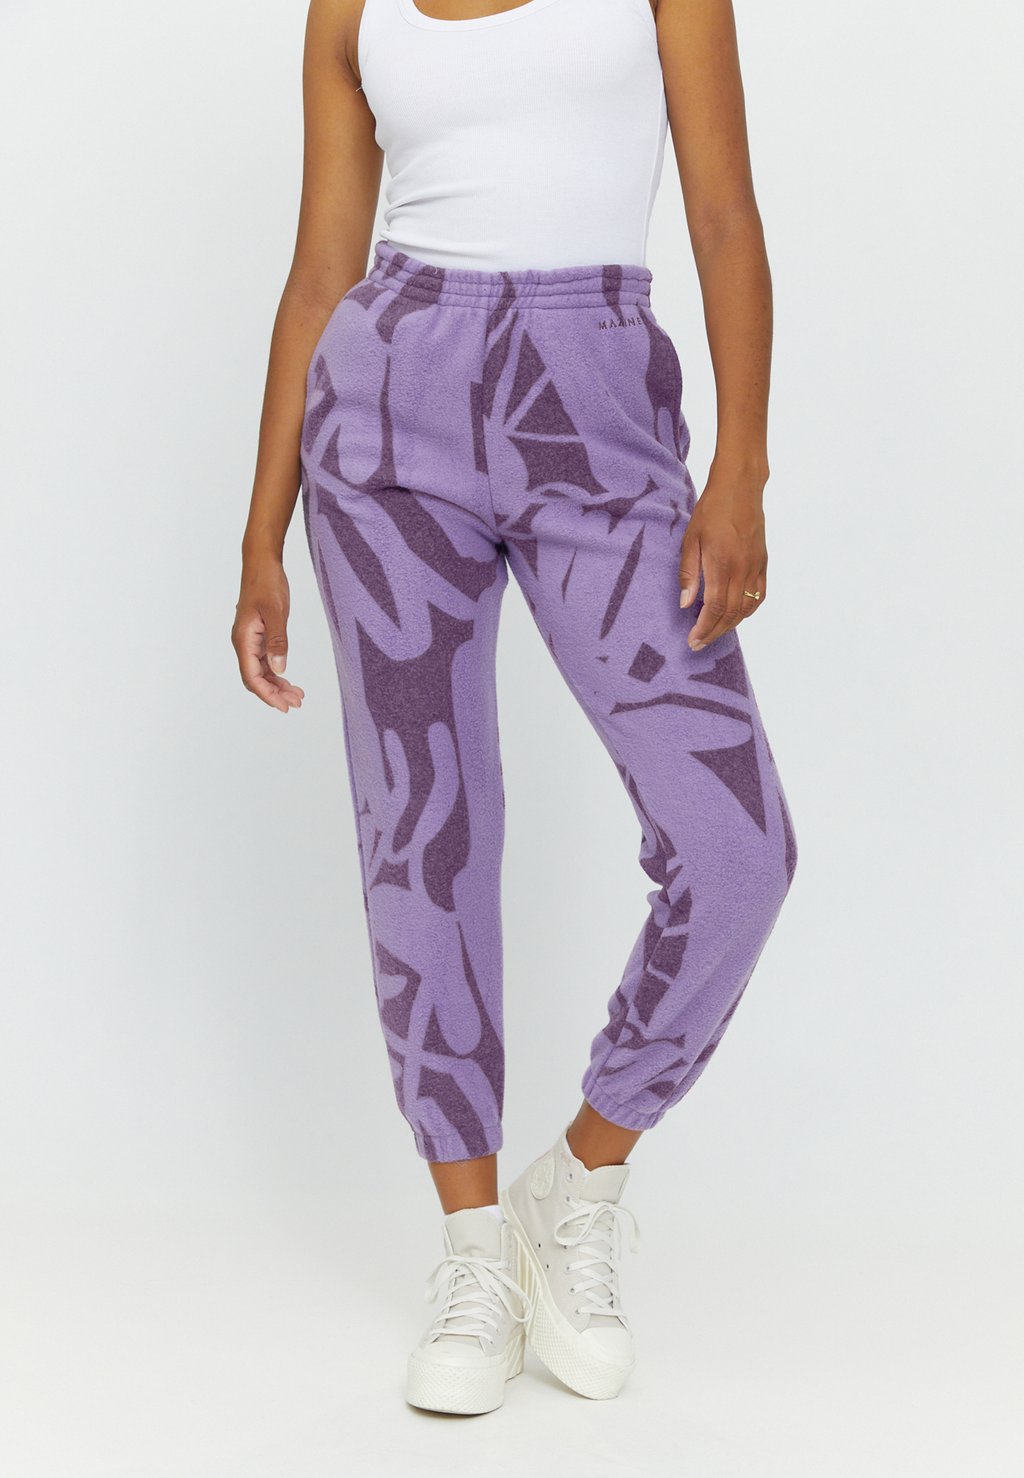 Спортивные штаны LOOP PRINTED Mazine, цвет purple haze printed толстовка mazine danbury half zip цвет purple haze printed